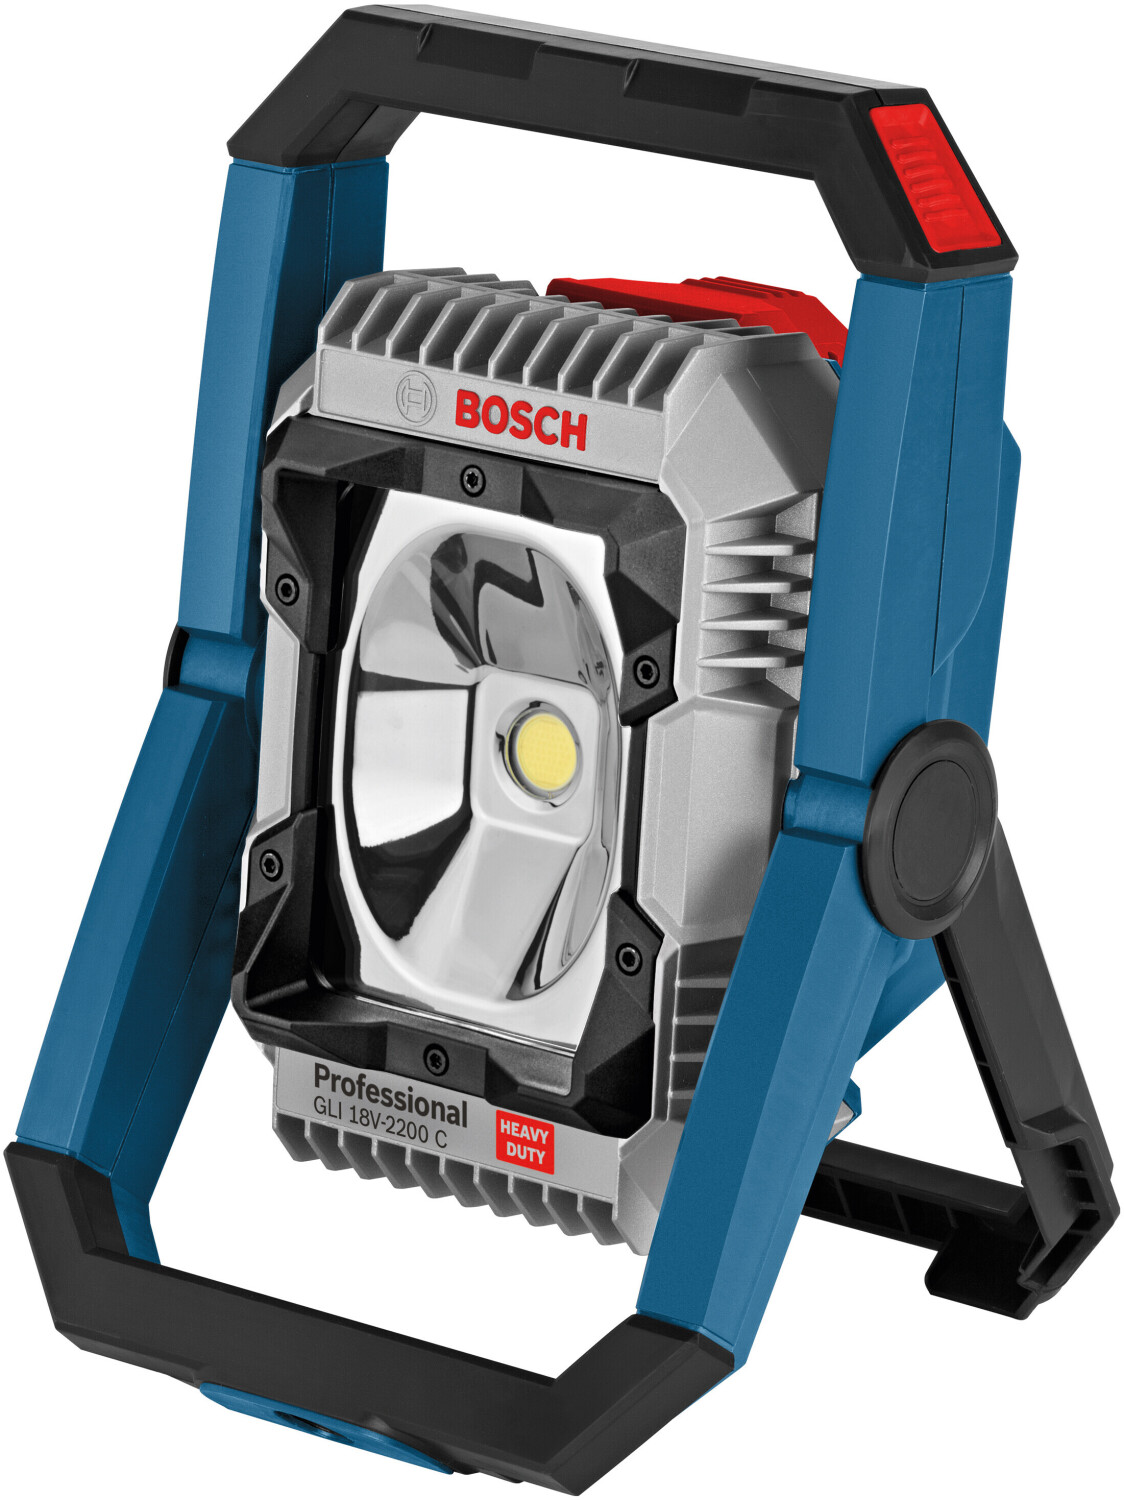 Soldes Bosch GLI 18V-2200 C Professional 2024 au meilleur prix sur